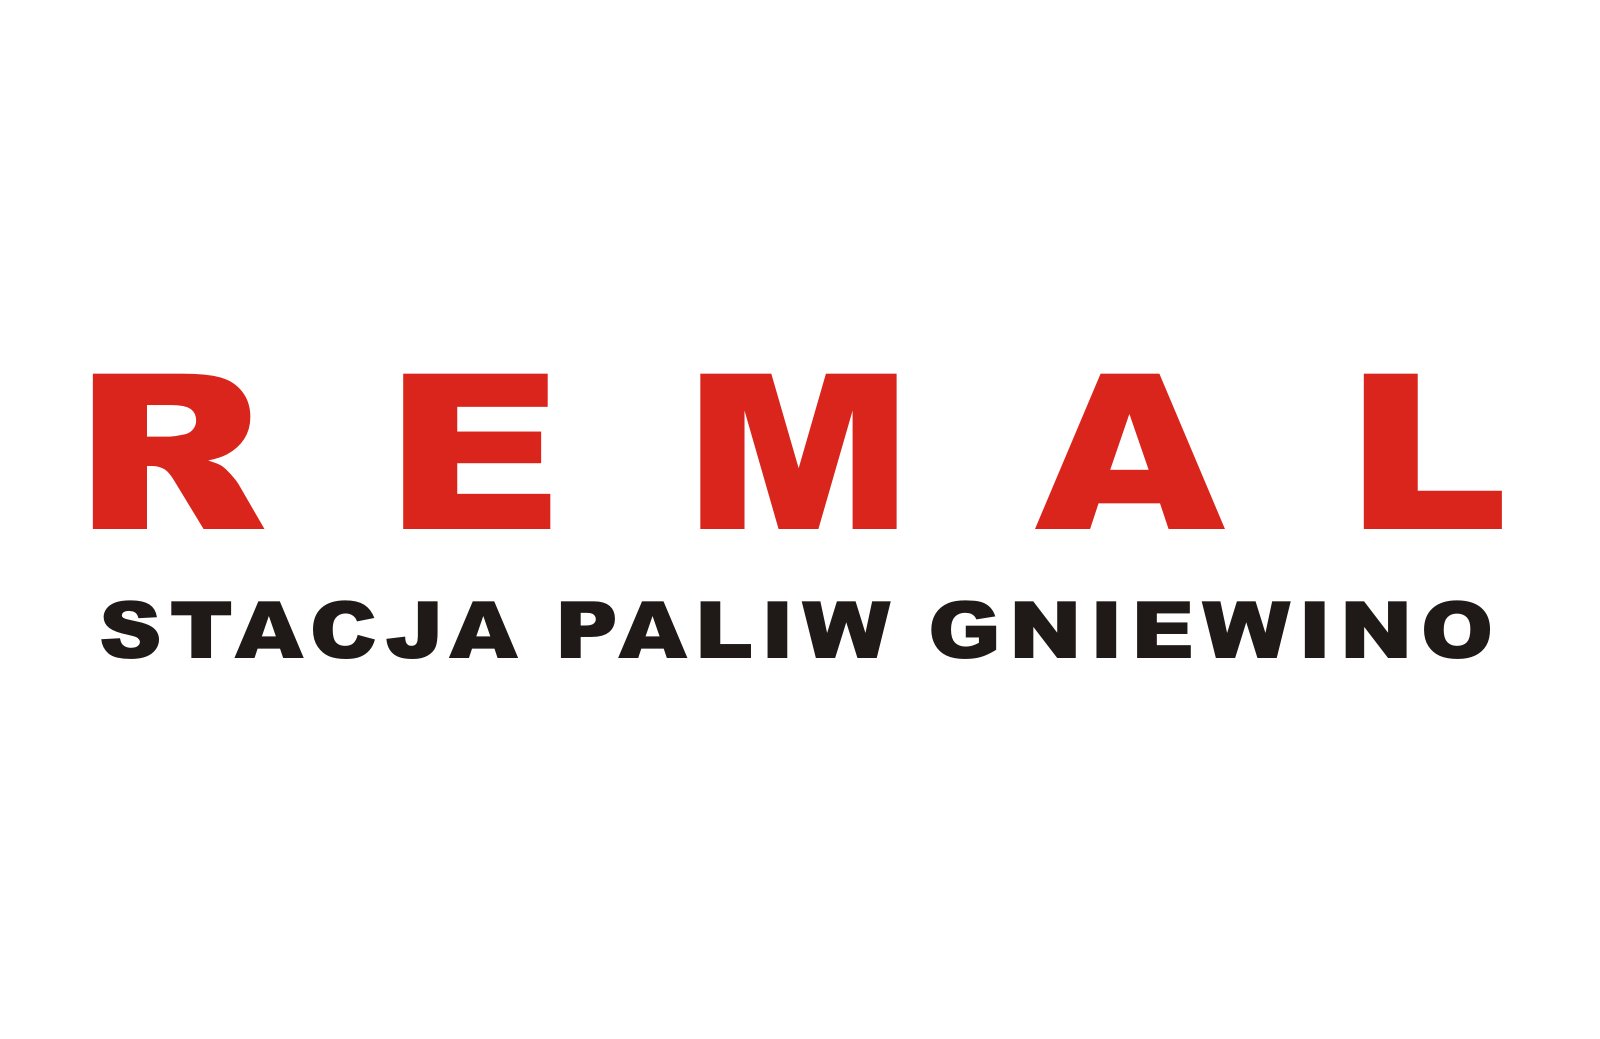 Remal logo